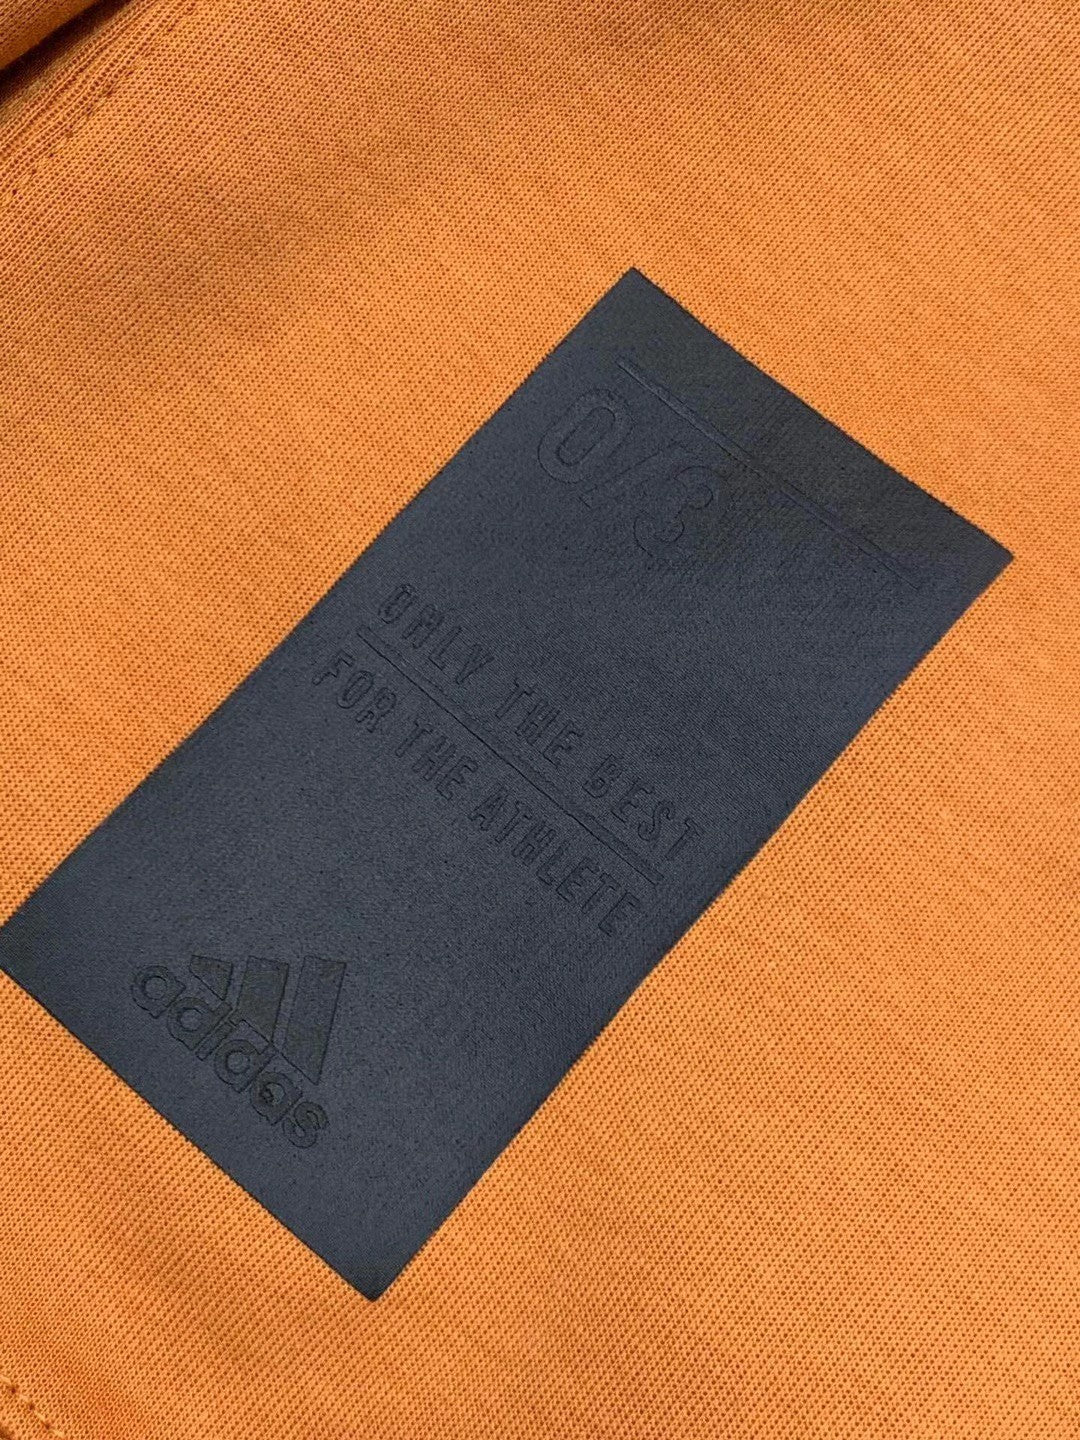 Maglione Adidas con Logo Centrale e Zip in Vita